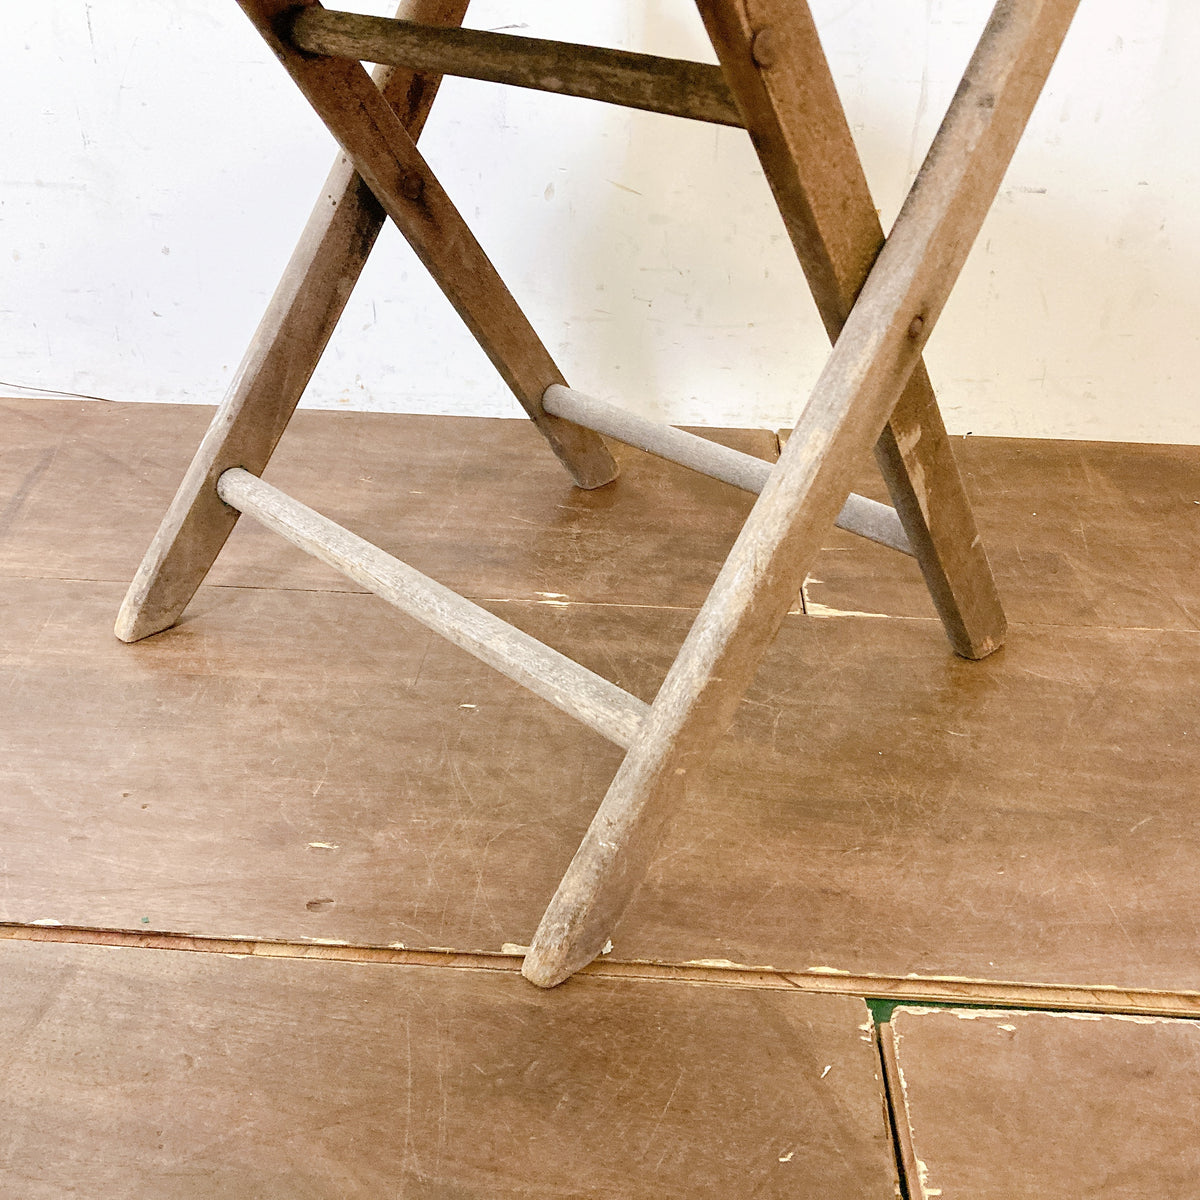 品番1461 フォールディングチェア 木製 折りたたみ椅子 ウッドチェア 